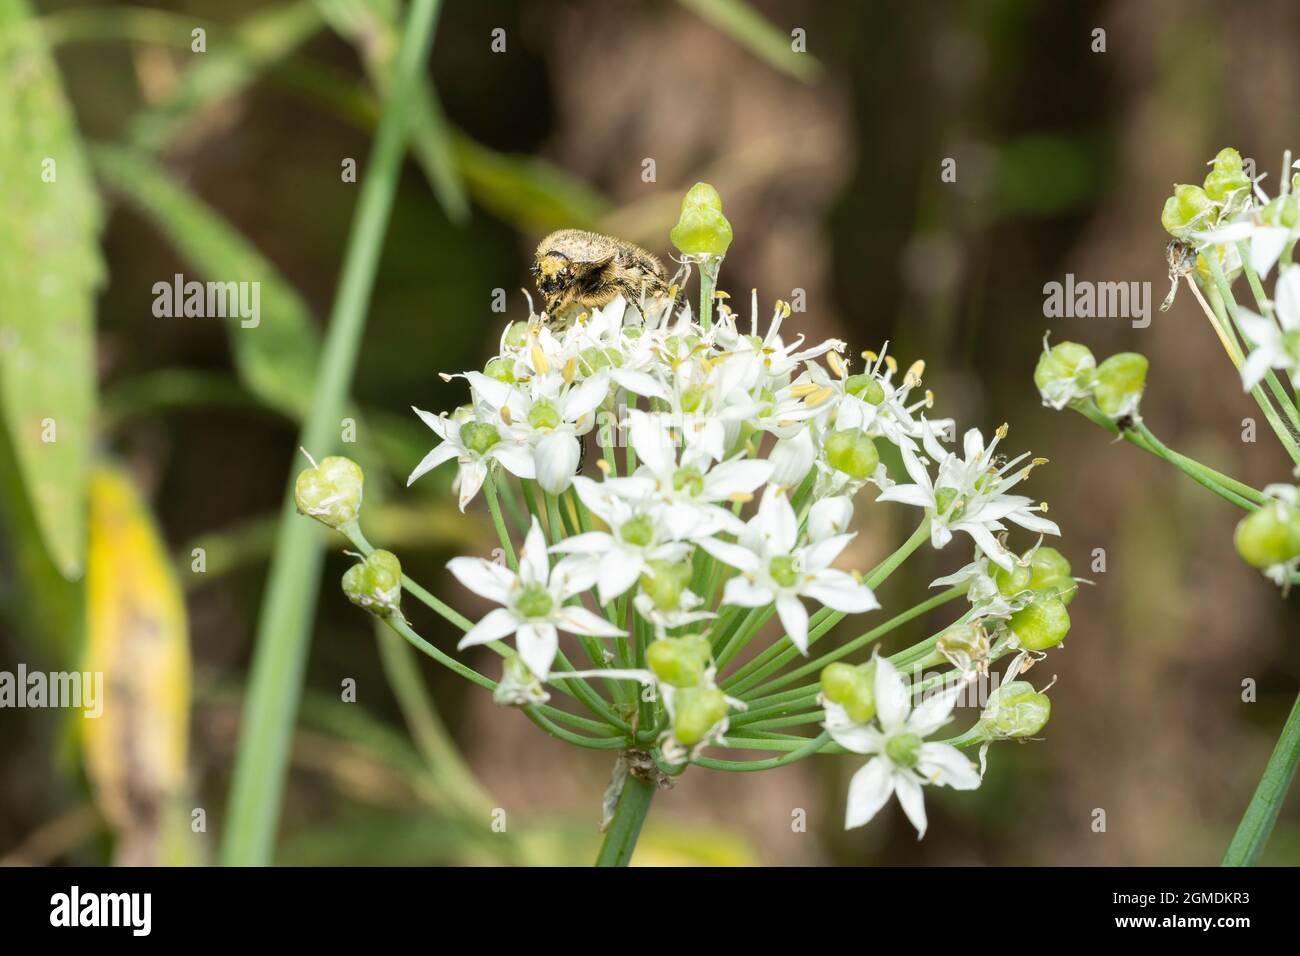 Gametis jucunda (Faldermann) on flower of garlic chives (Allium tuberosum), Isehara City, Kanagawa Prefecture, Japan Stock Photo